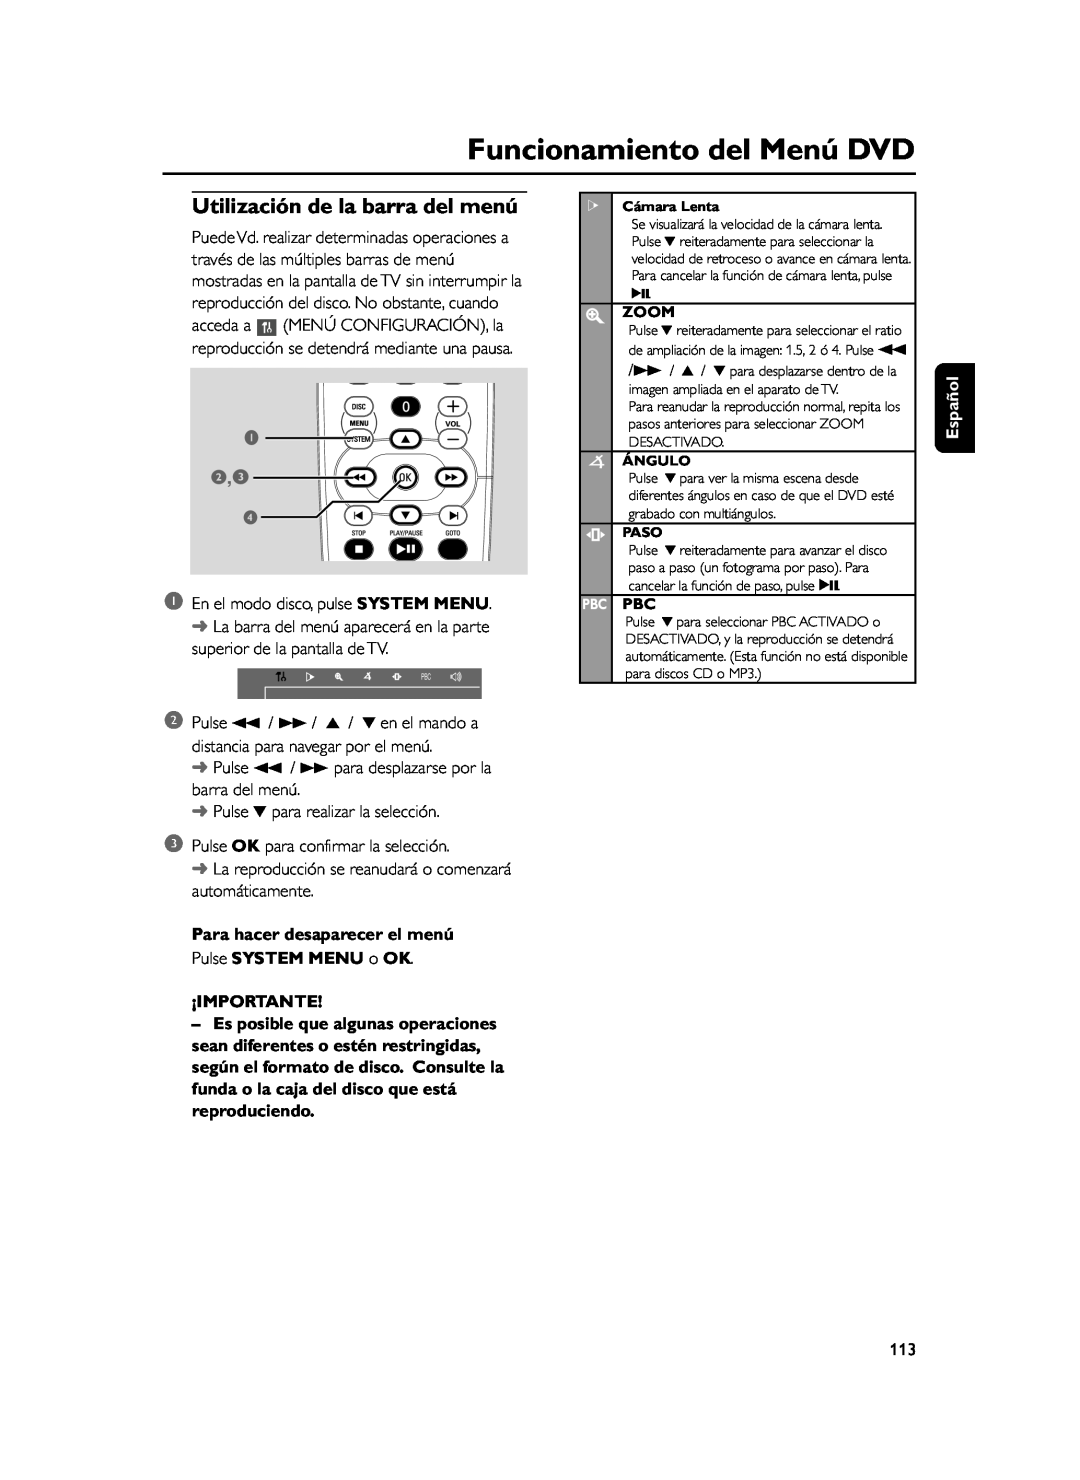 Philips FWD39 manual Funcionamiento del Menú DVD, Utilización de la barra del menú, 1 2,3, Español, ¡Importante 